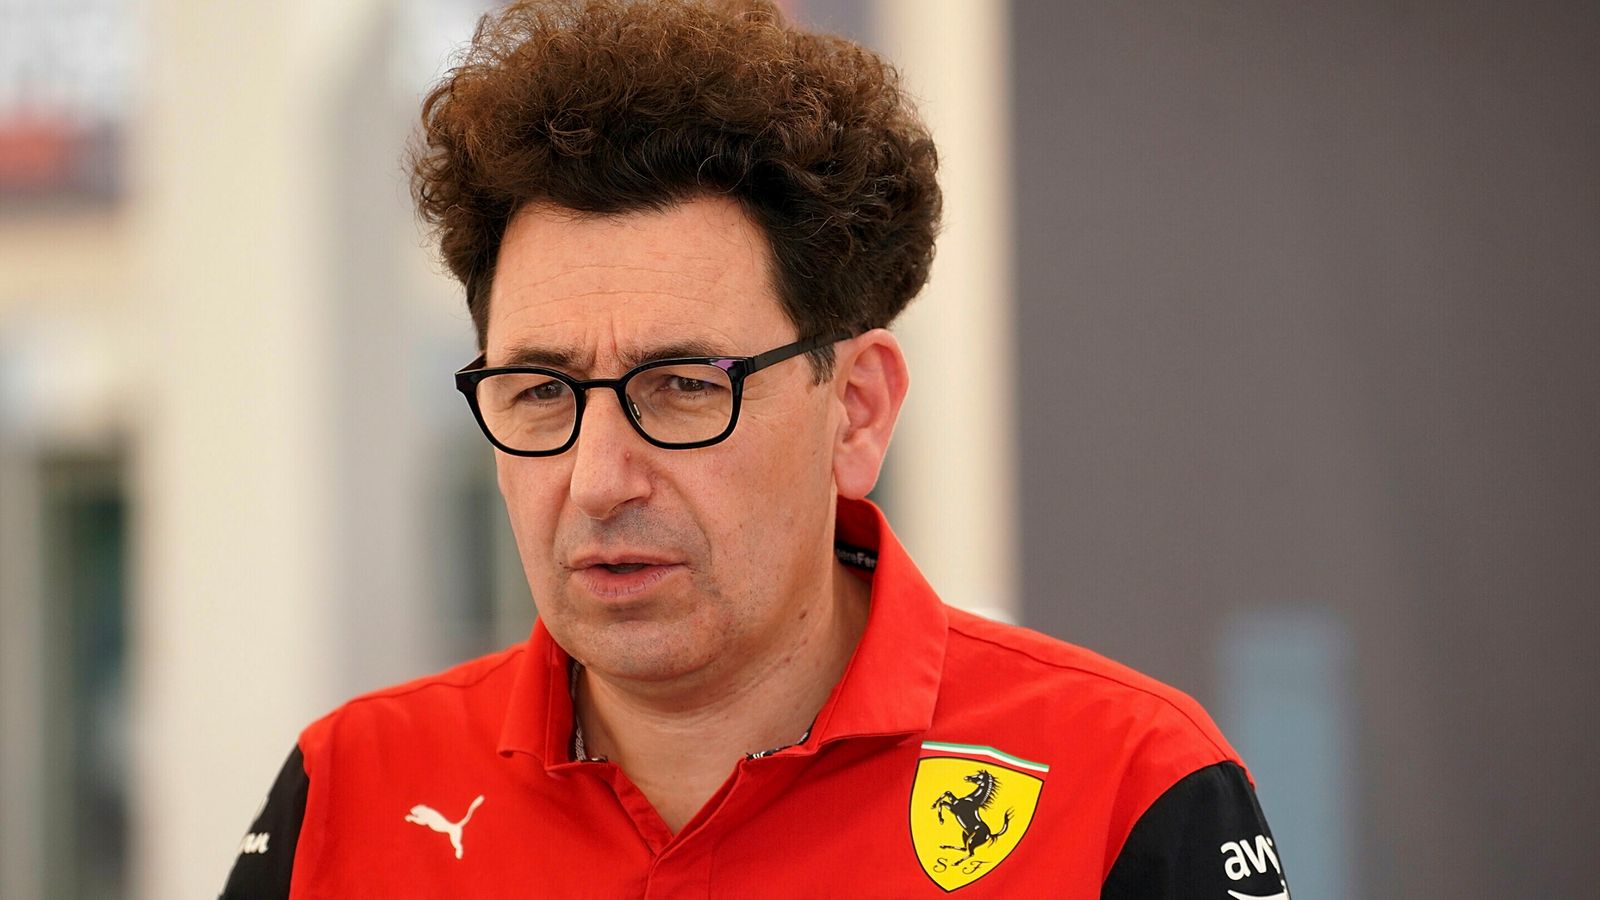 Mattia Binotto si è dimesso da team principal Ferrari dopo il fallimento della candidatura al campionato di Formula 1 2022